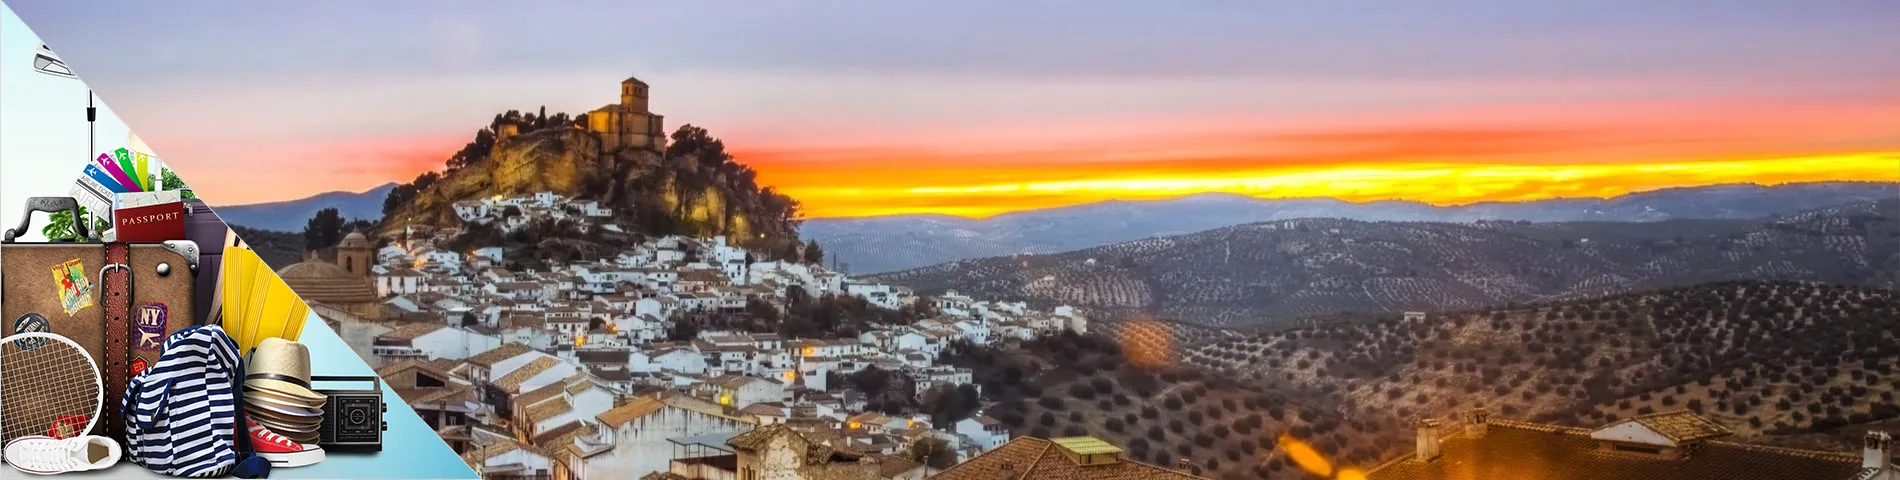 Granada - Espanhol para Turismo